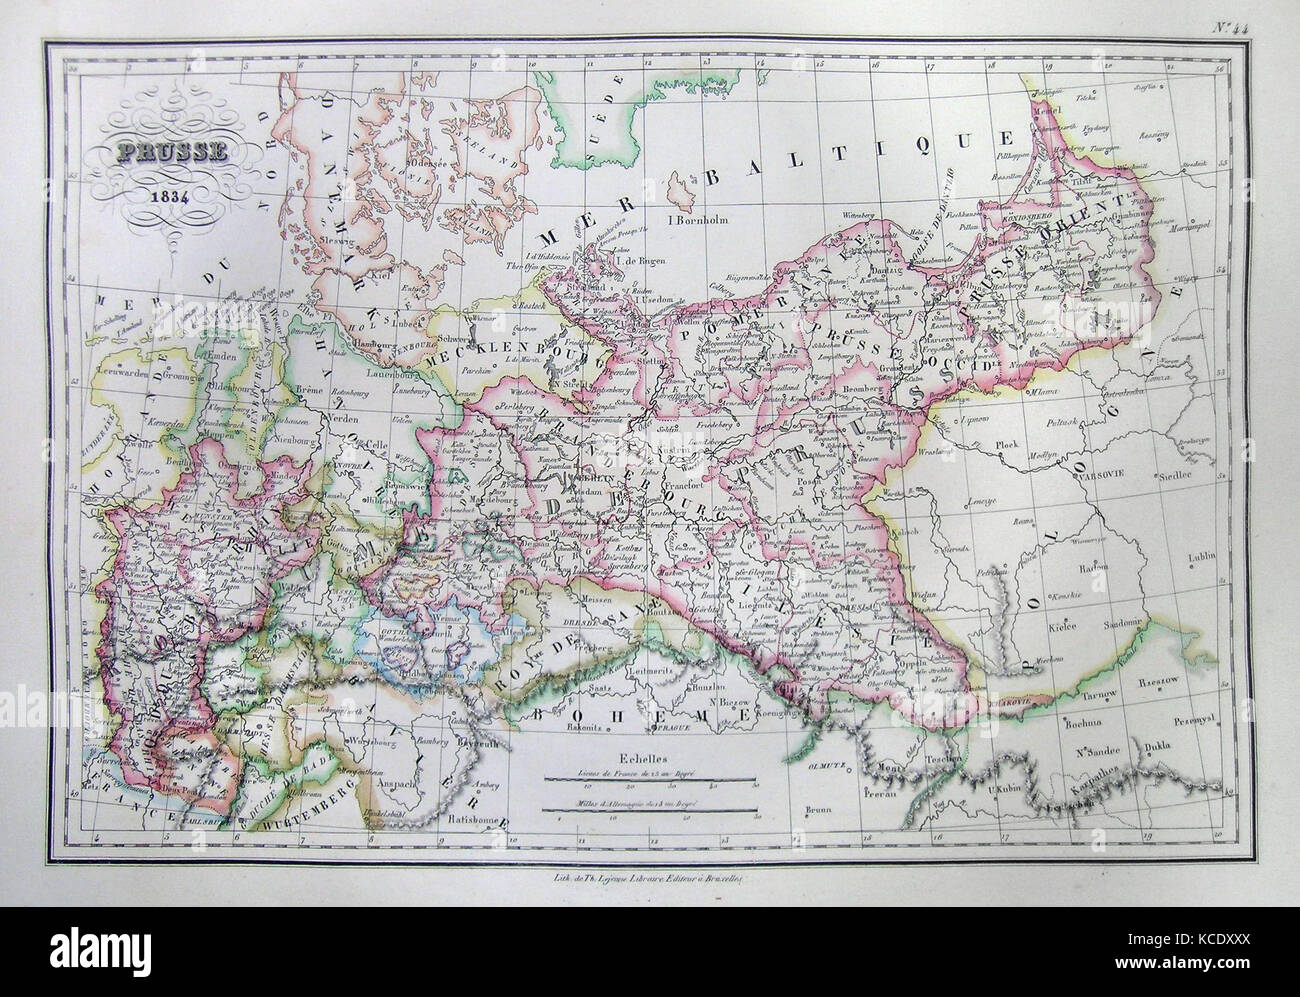 1837, Malte-Brun Mapa del norte de Alemania o en Prusia. Foto de stock